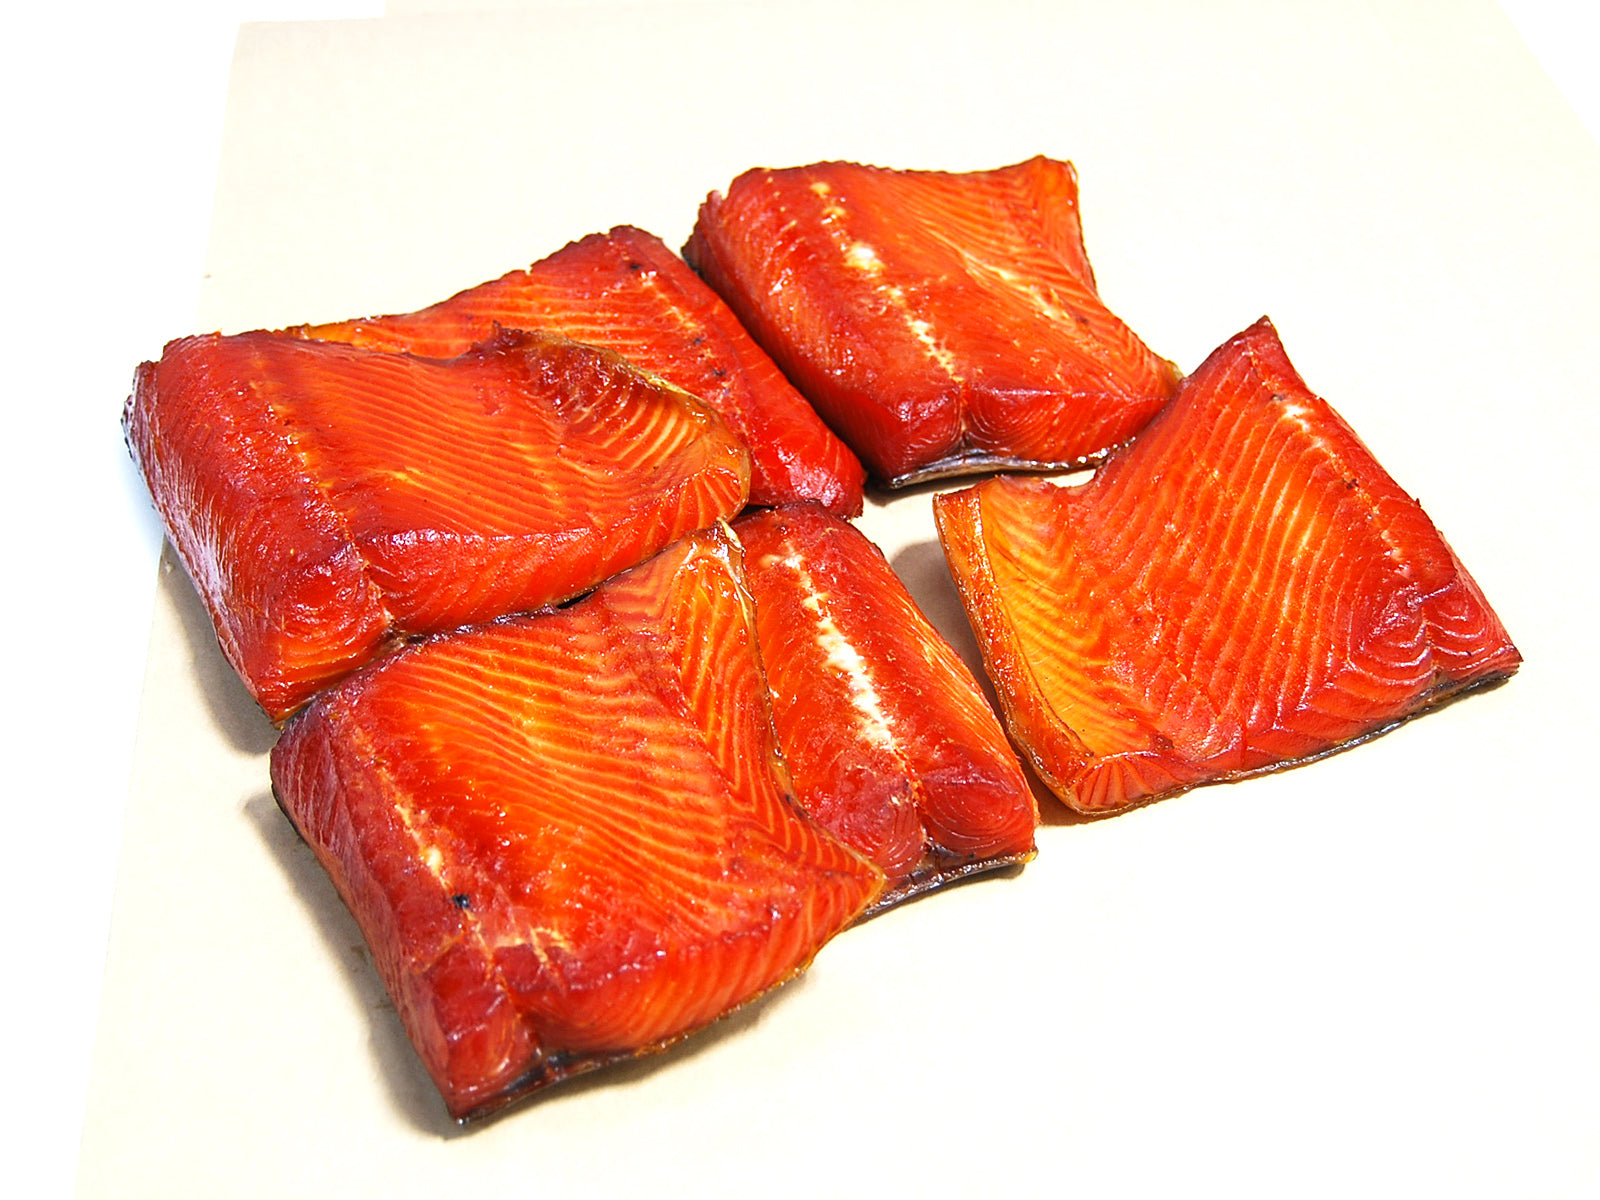 Smoked Wild King Salmon by the pound